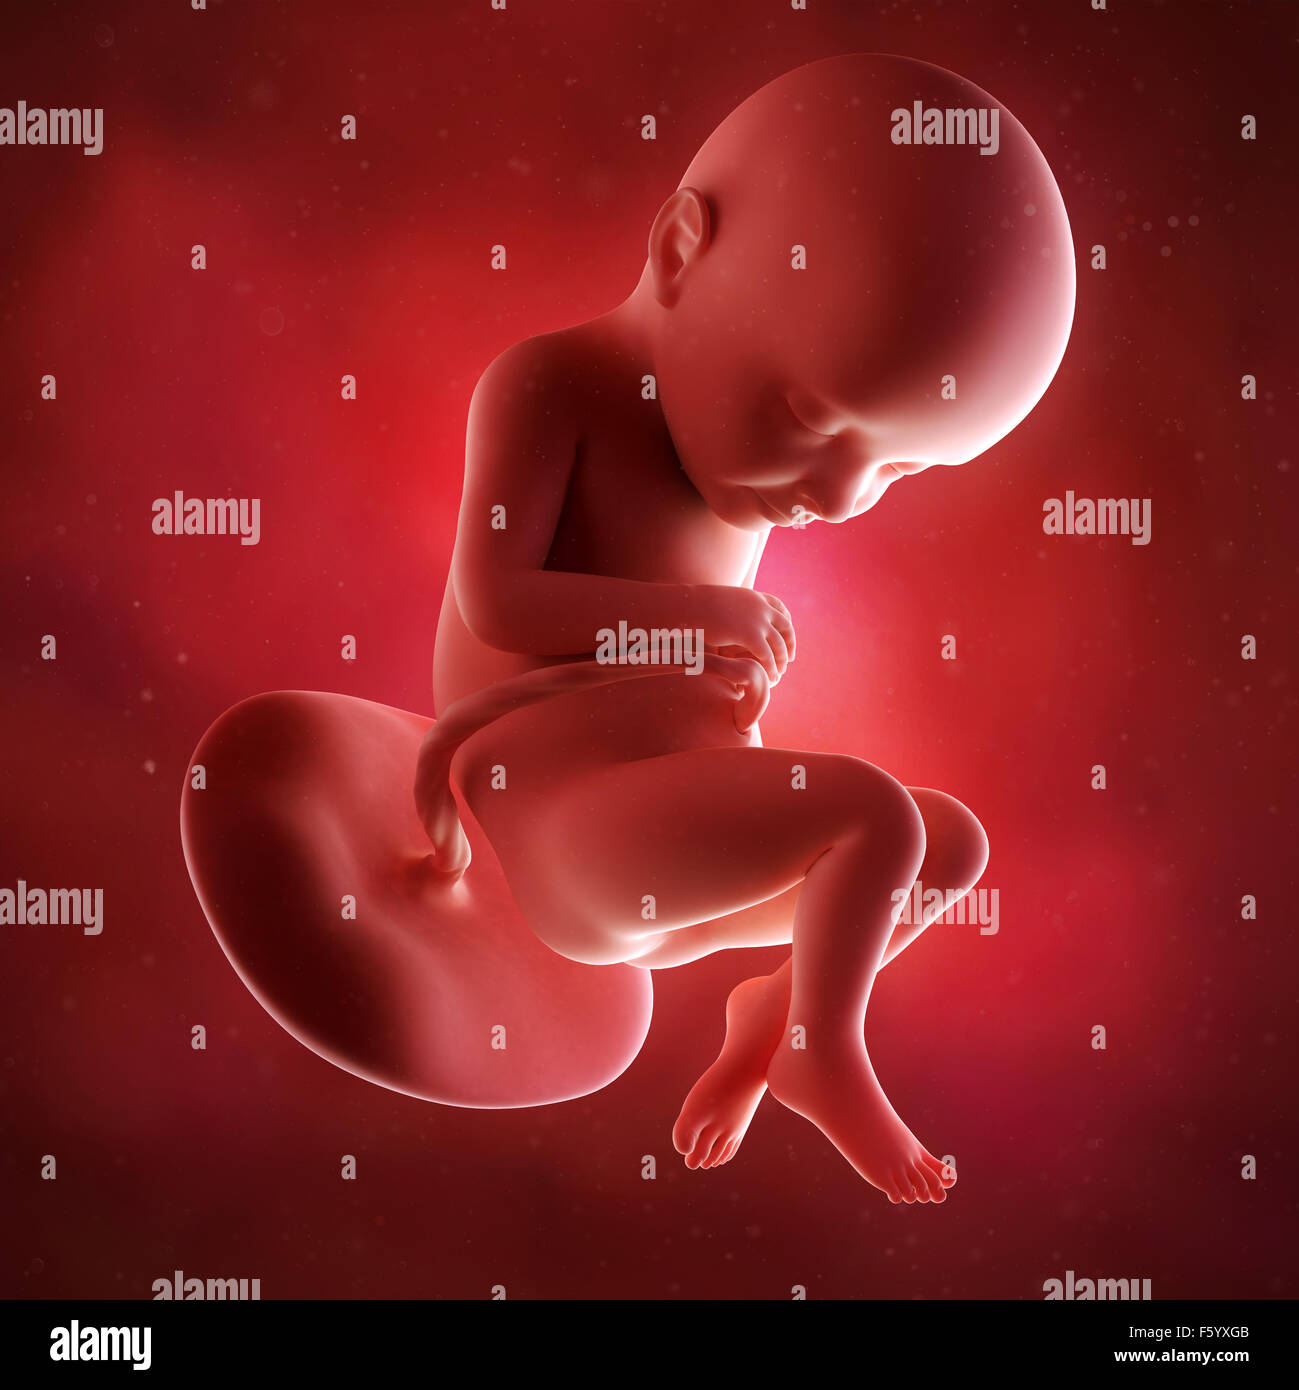 Précision médicale 3d illustration d'un foetus la semaine 32 Banque D'Images